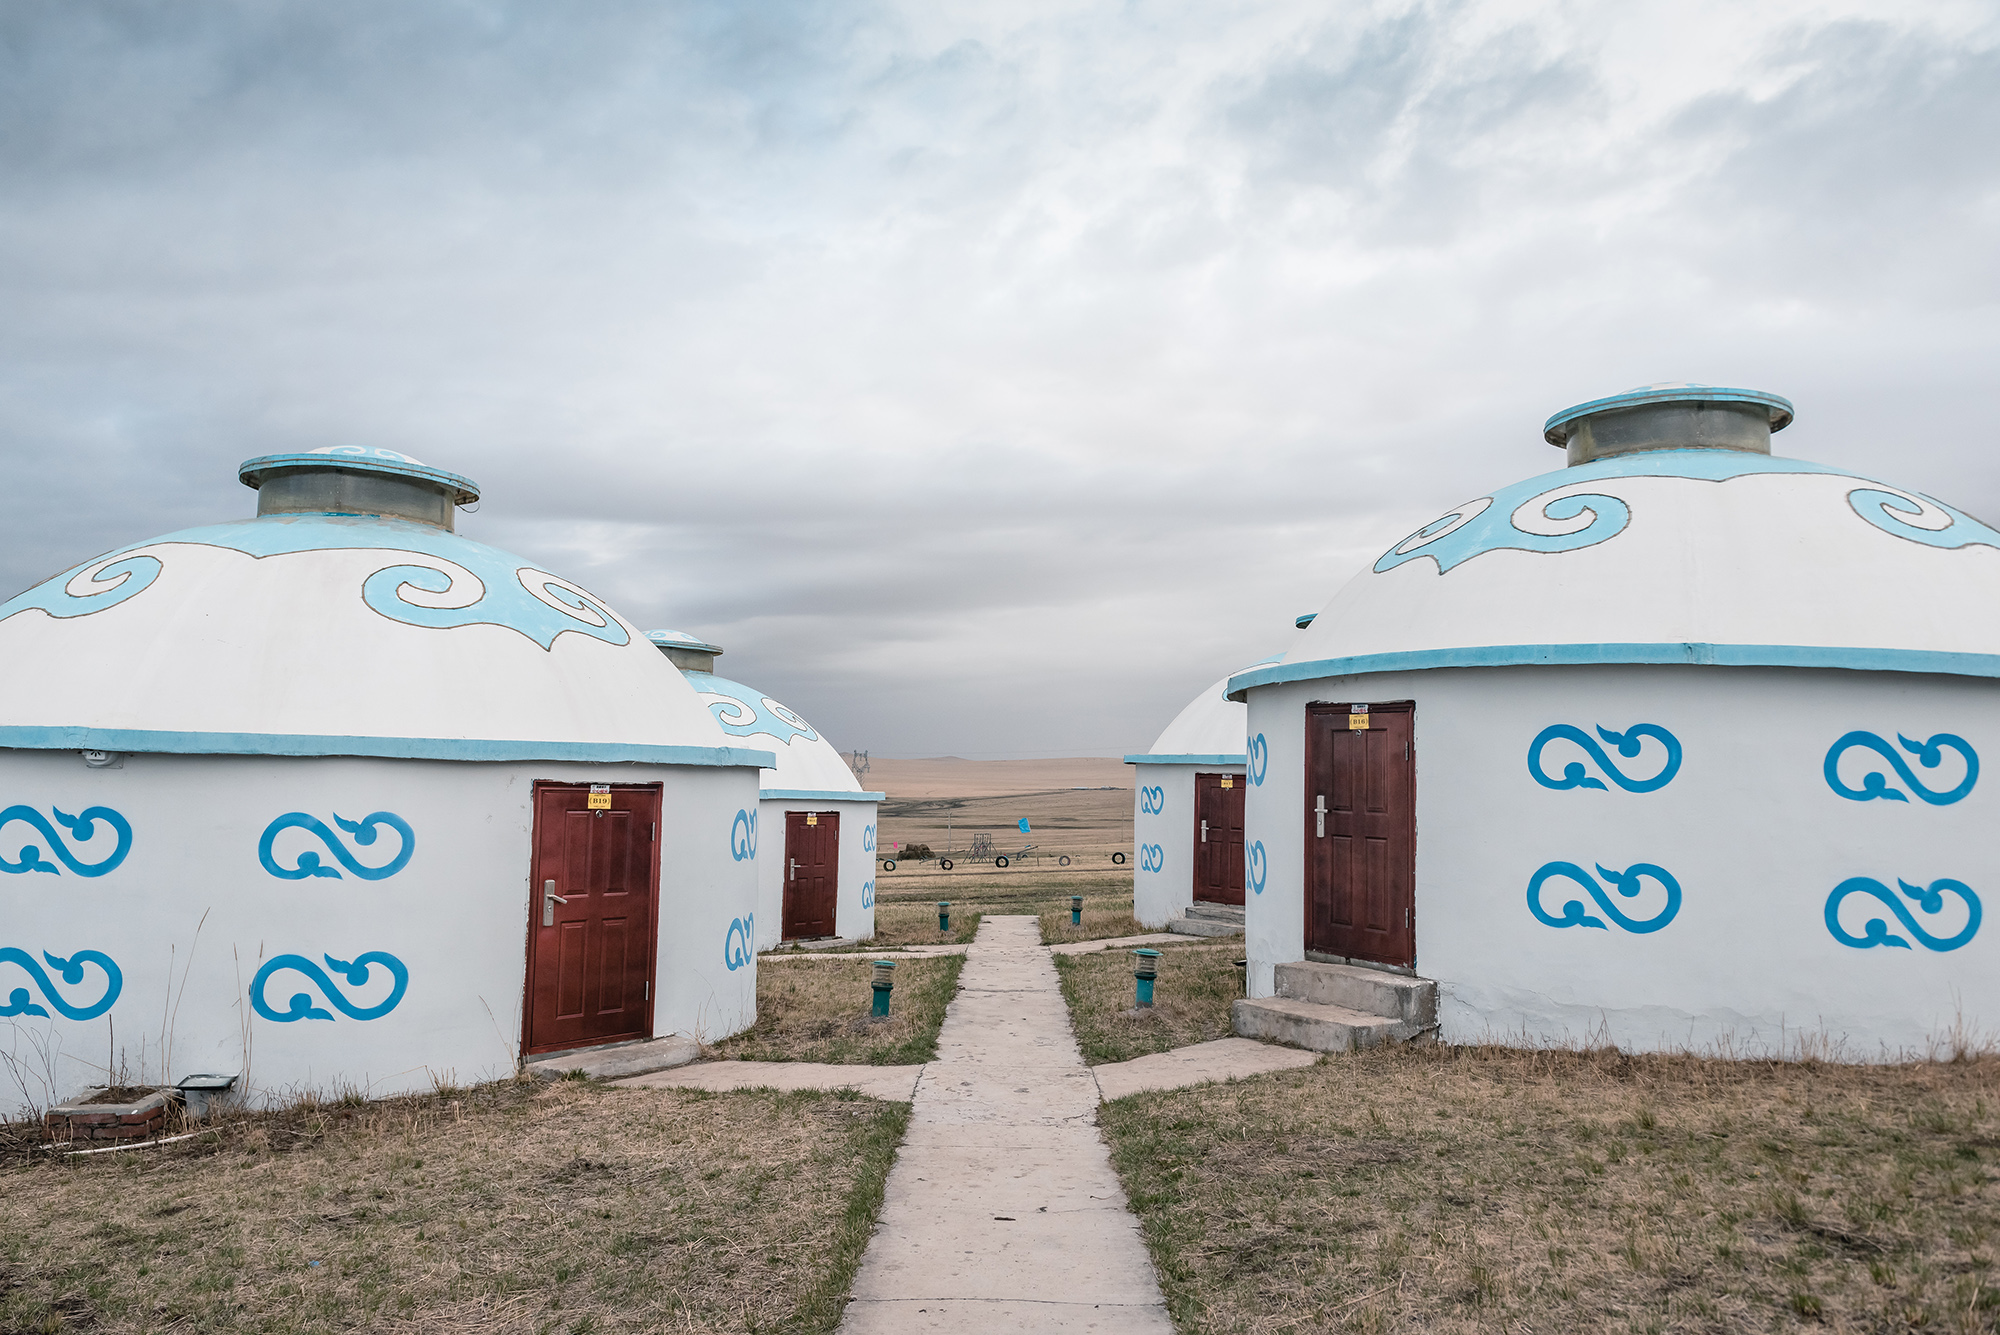 大部分人去草原上旅游都会问:为什么蒙古包是圆的?